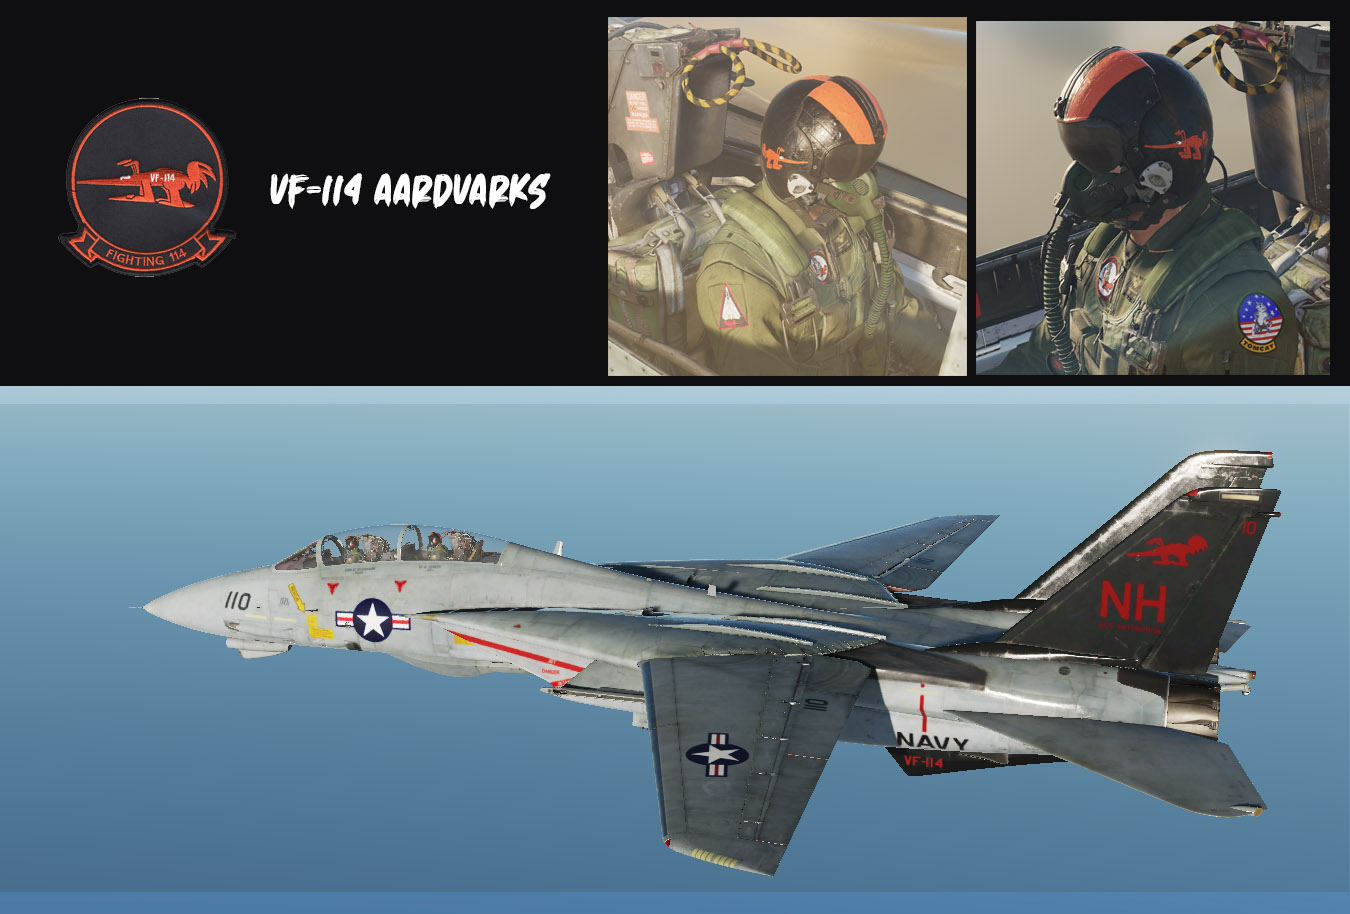 VF-114 Aardvarks (black tail)